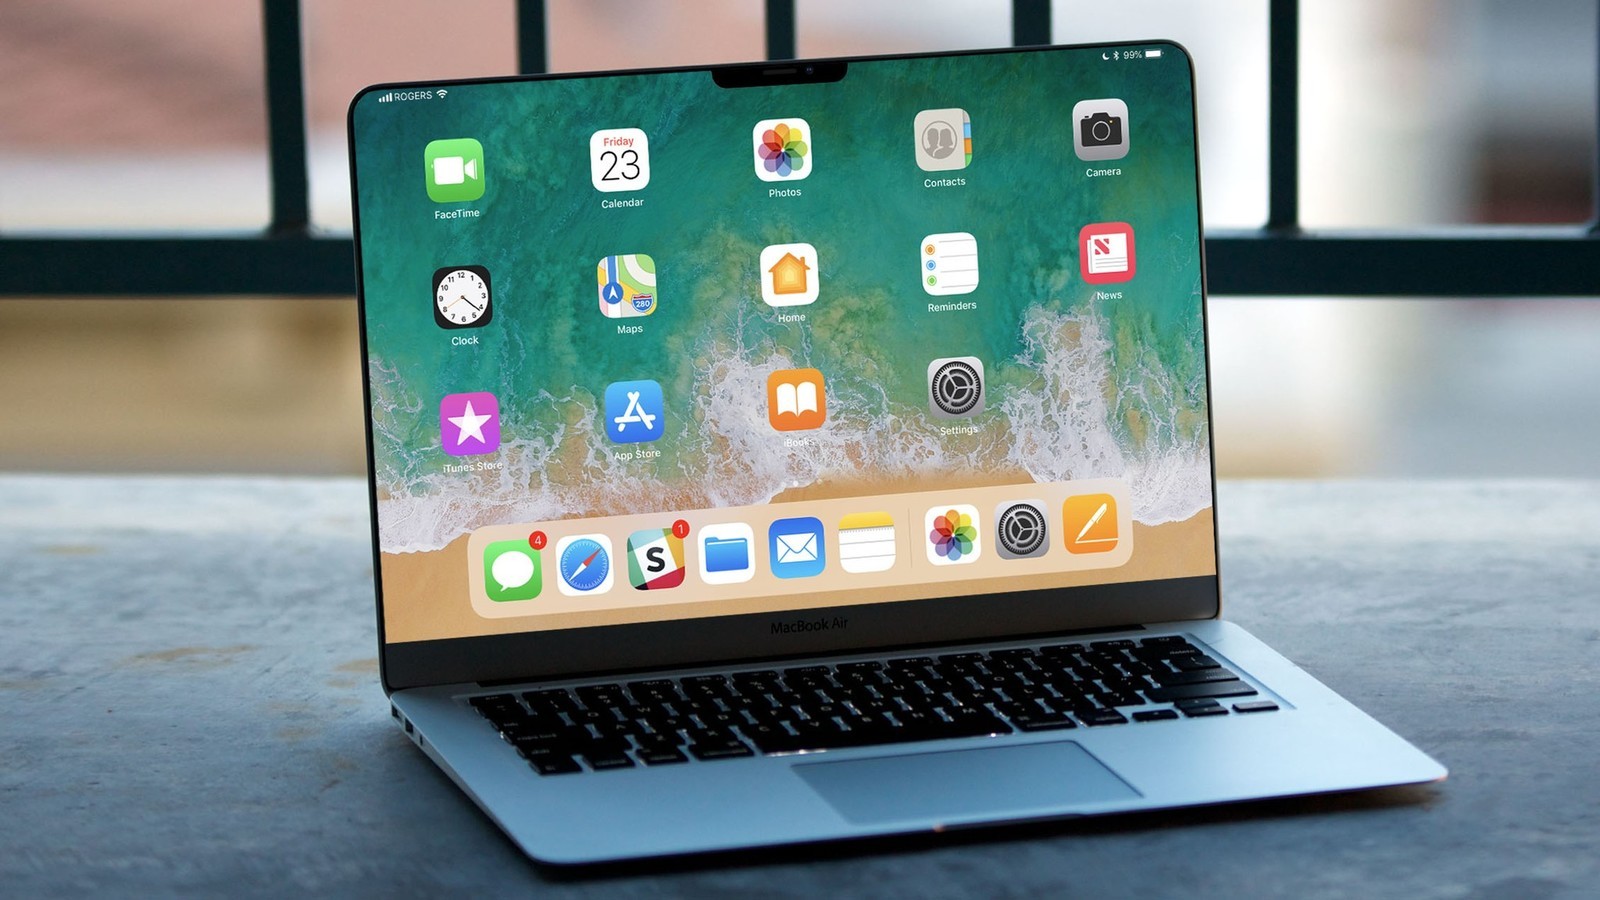 Thiết kế Macbook Pro 2019 với bàn phím kiểu bướm